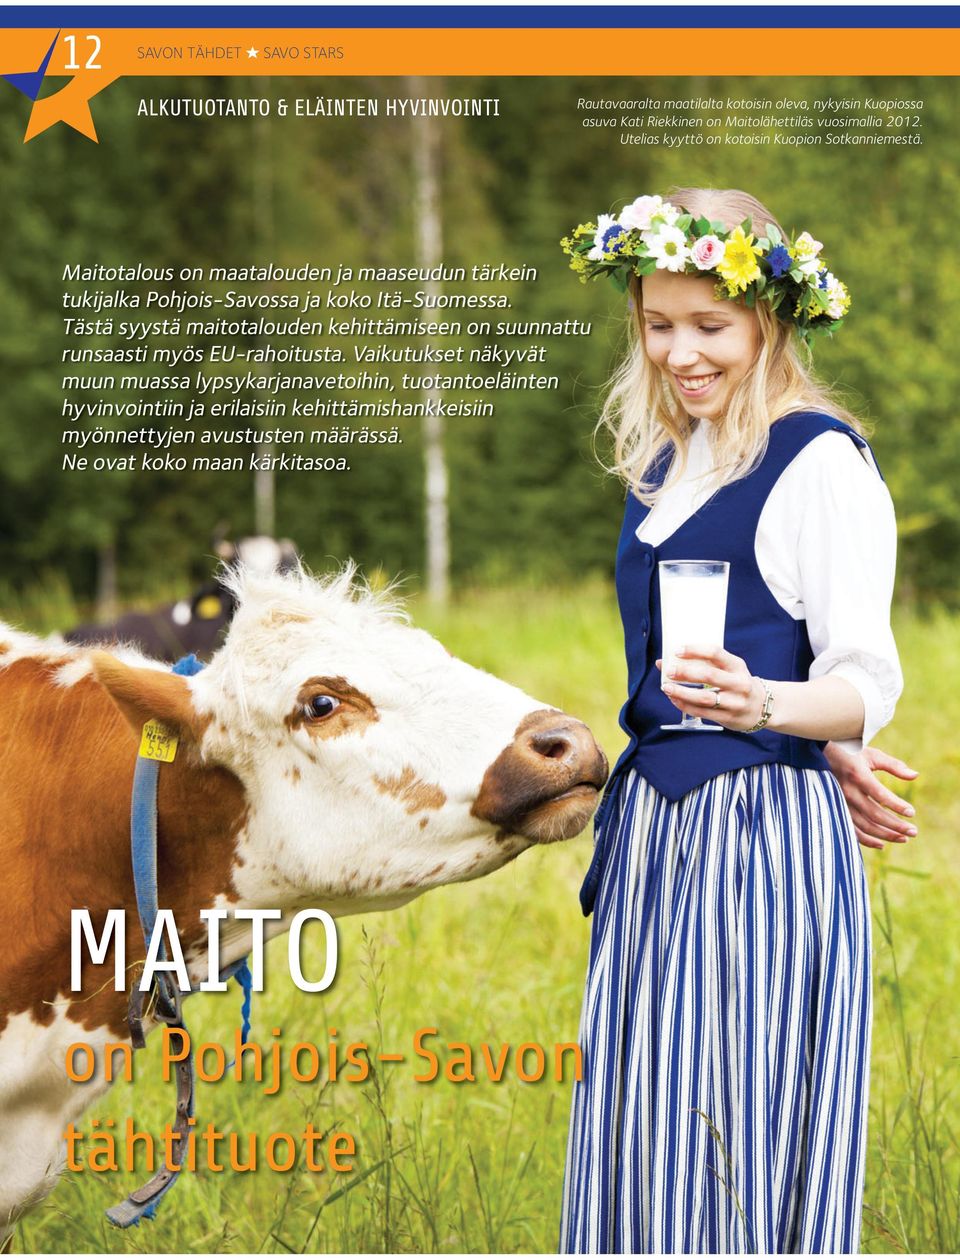 Maitotalous on maatalouden ja maaseudun tärkein tukijalka Pohjois-Savossa ja koko Itä-Suomessa.